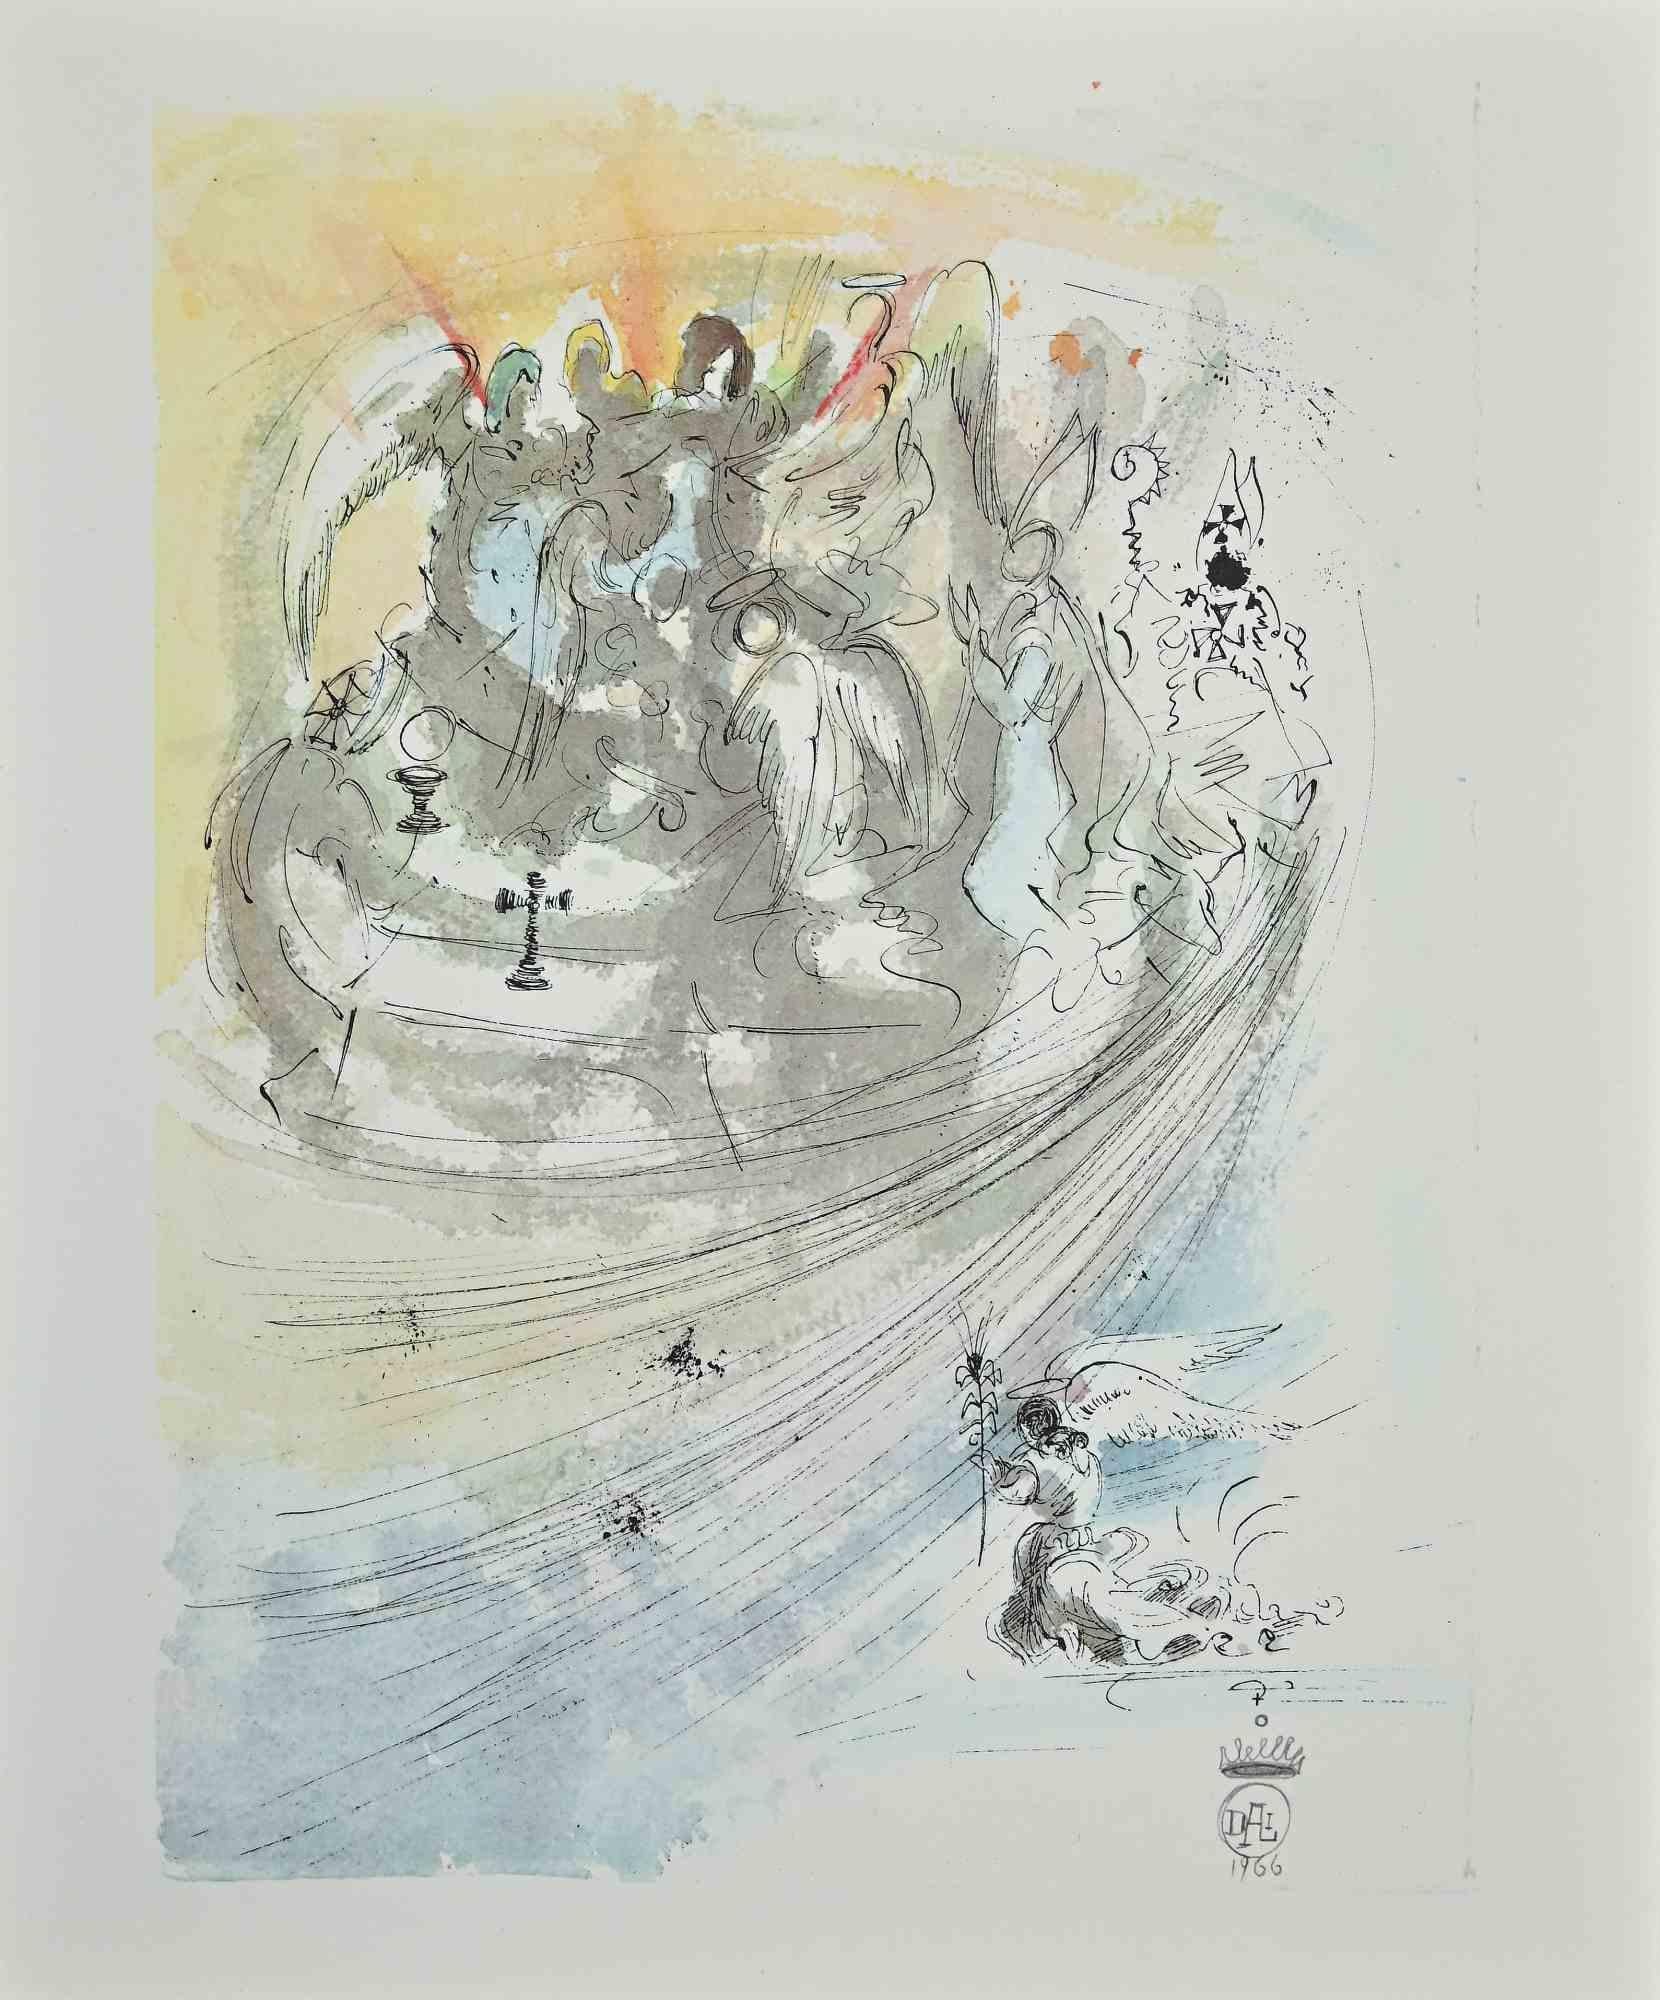 Sanctificetur Nomen Tuum ist eine Lithographie von Salvador Dalí (1904 - 1989), aus dem Band "Pater Noster", erschienen bei Rizzoli Editore, Mailand, 1966.

Dieser schöne Originaldruck zeigt eine Menge verzweifelter Menschen, die von einem bunten